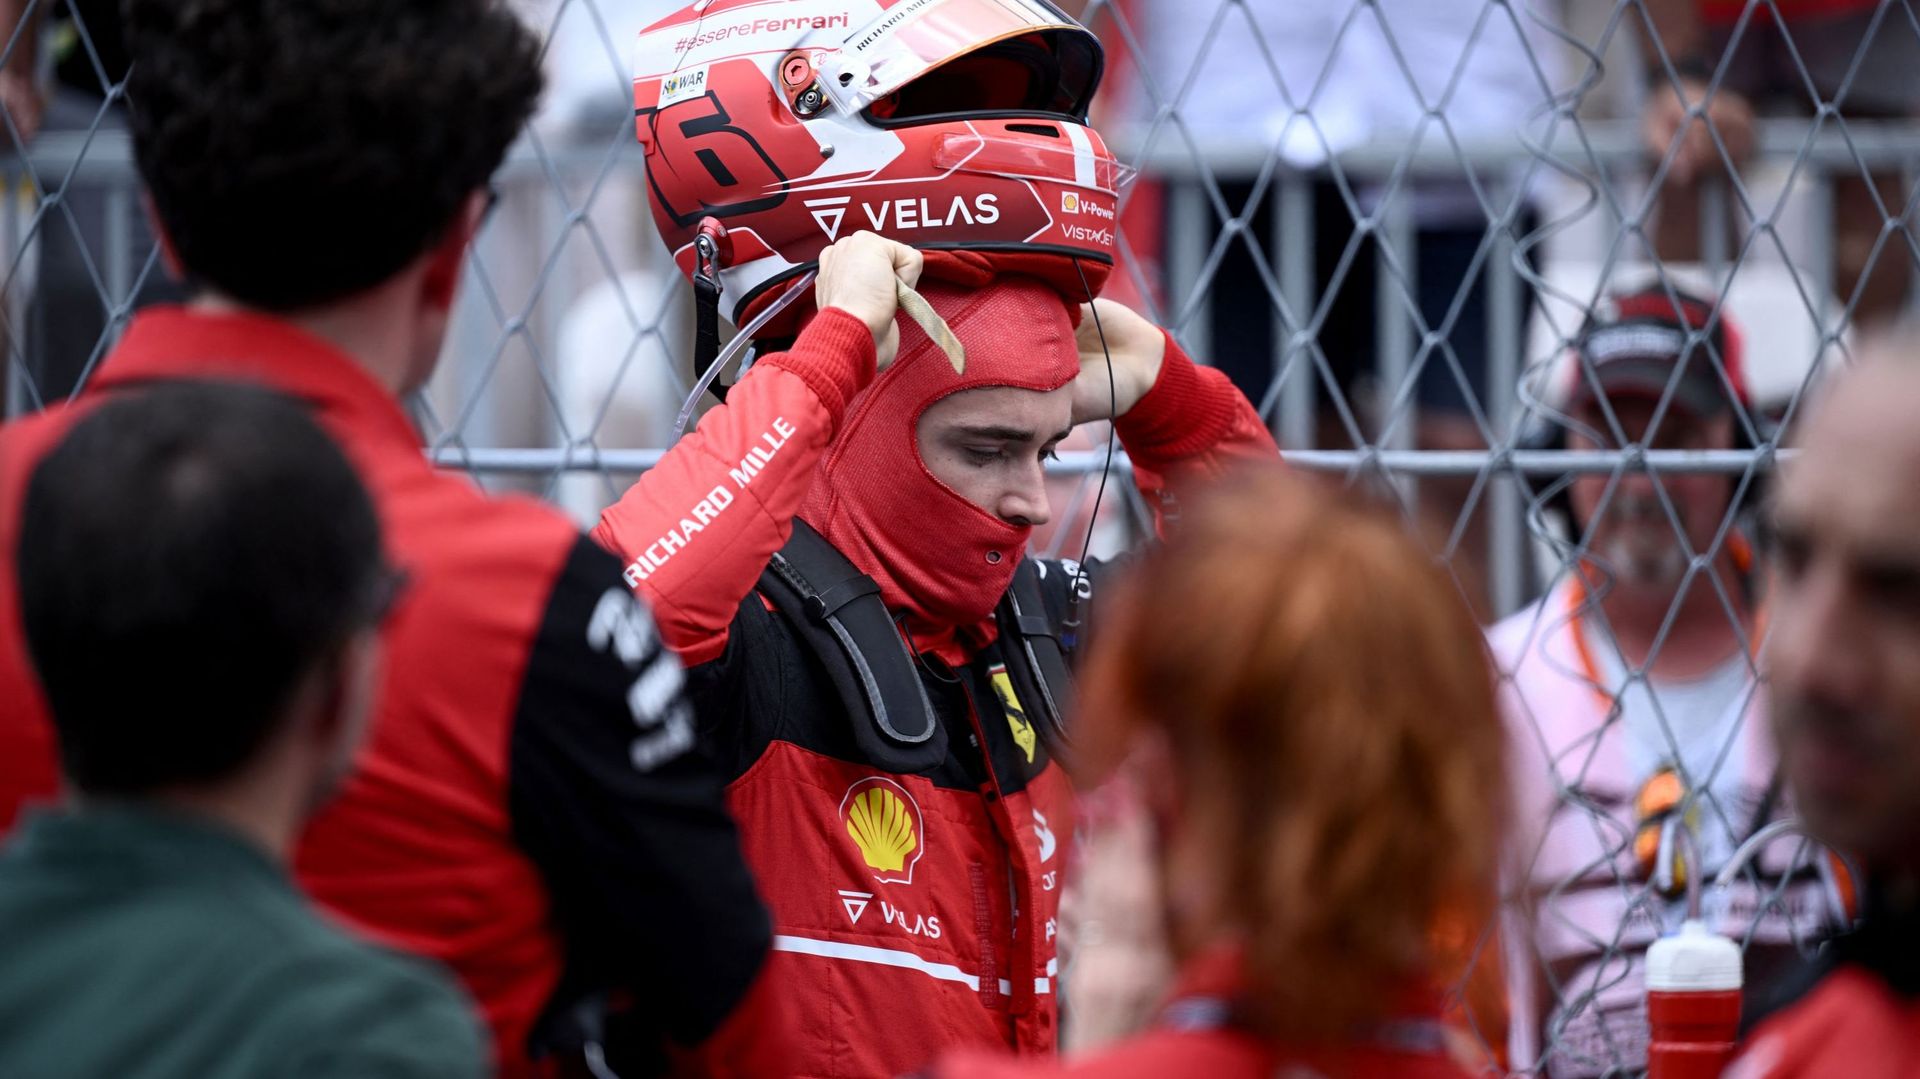 Alors qu’il roulait pour une démonstration au volant de la mythique Ferrari de Niki Lauda en marge du Grand Prix historique de Monaco ce dimanche, Charles Leclerc est parti à la faute.